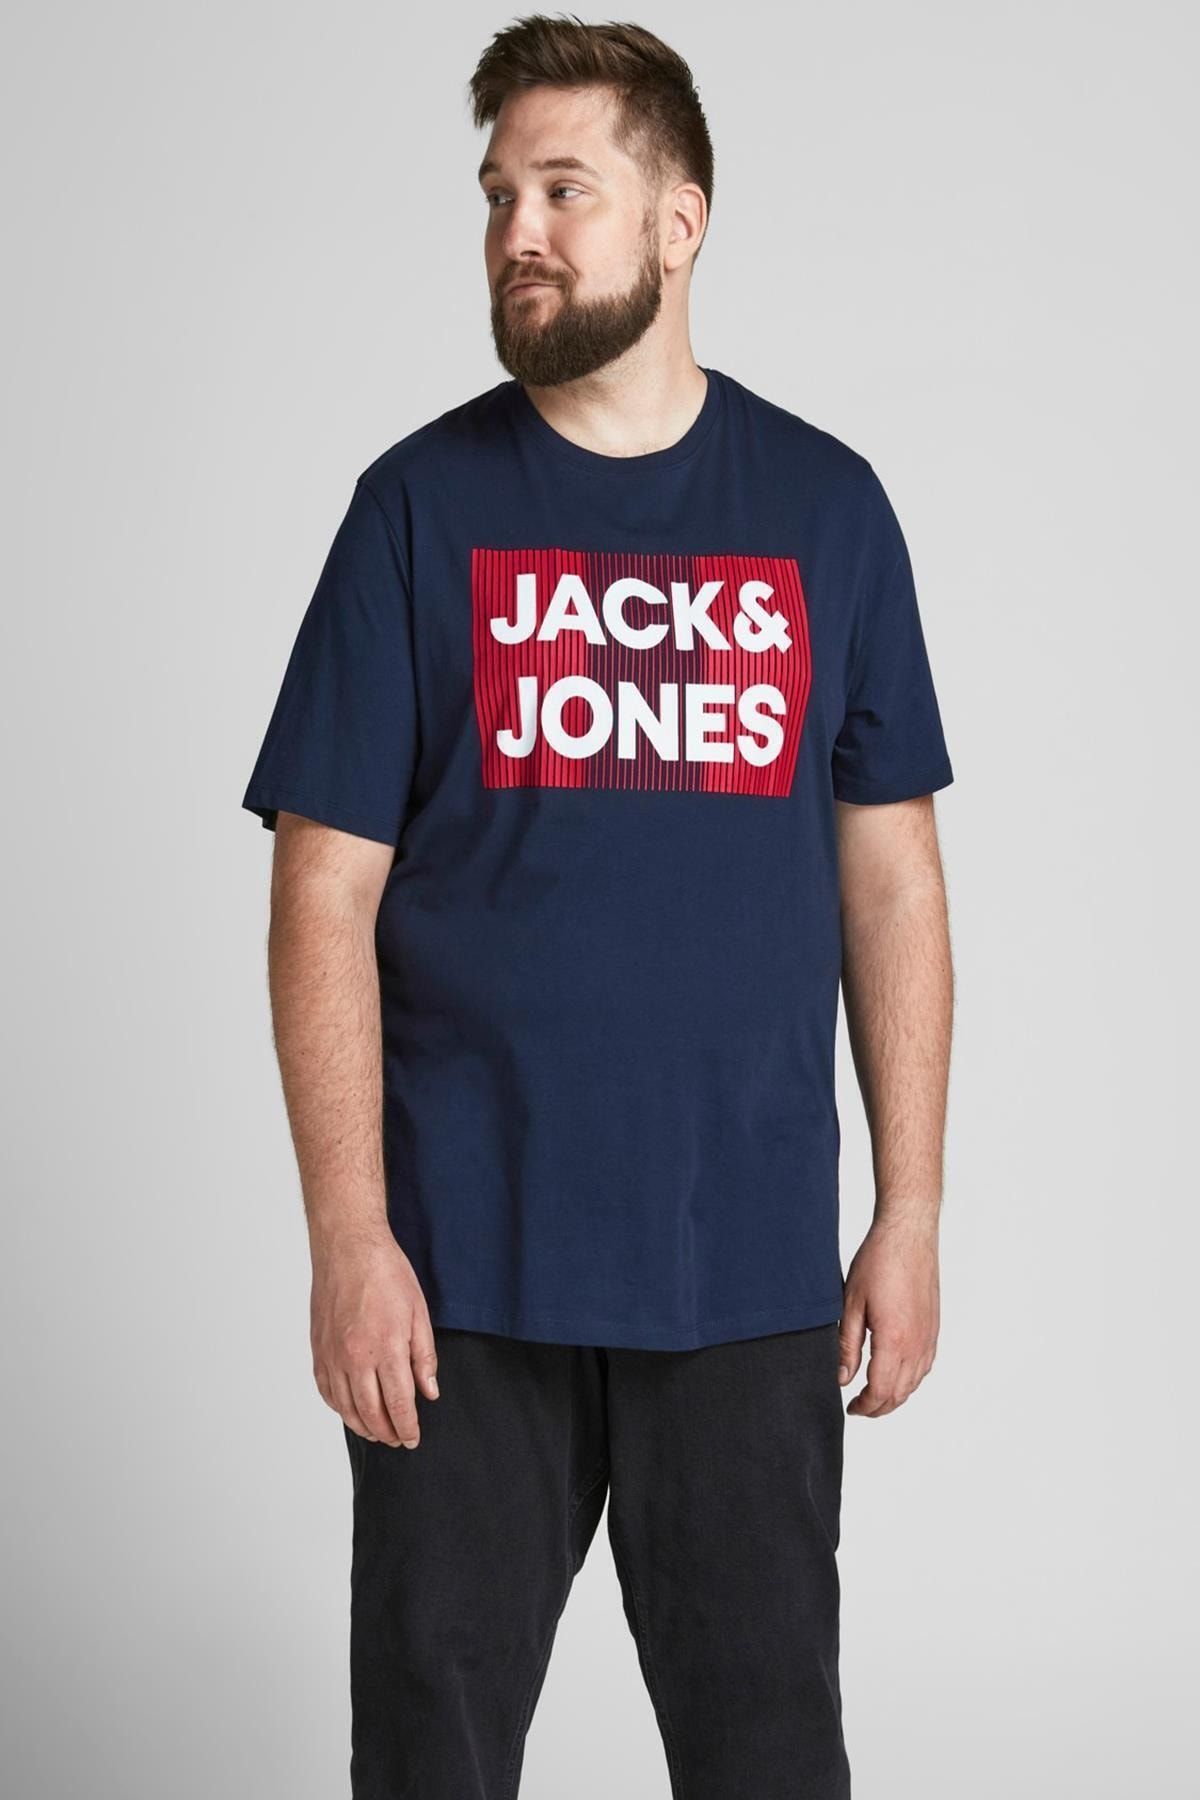 تی شرت مردانه سرمه ای جک اند جونز Jack & Jones (برند دانمارک)